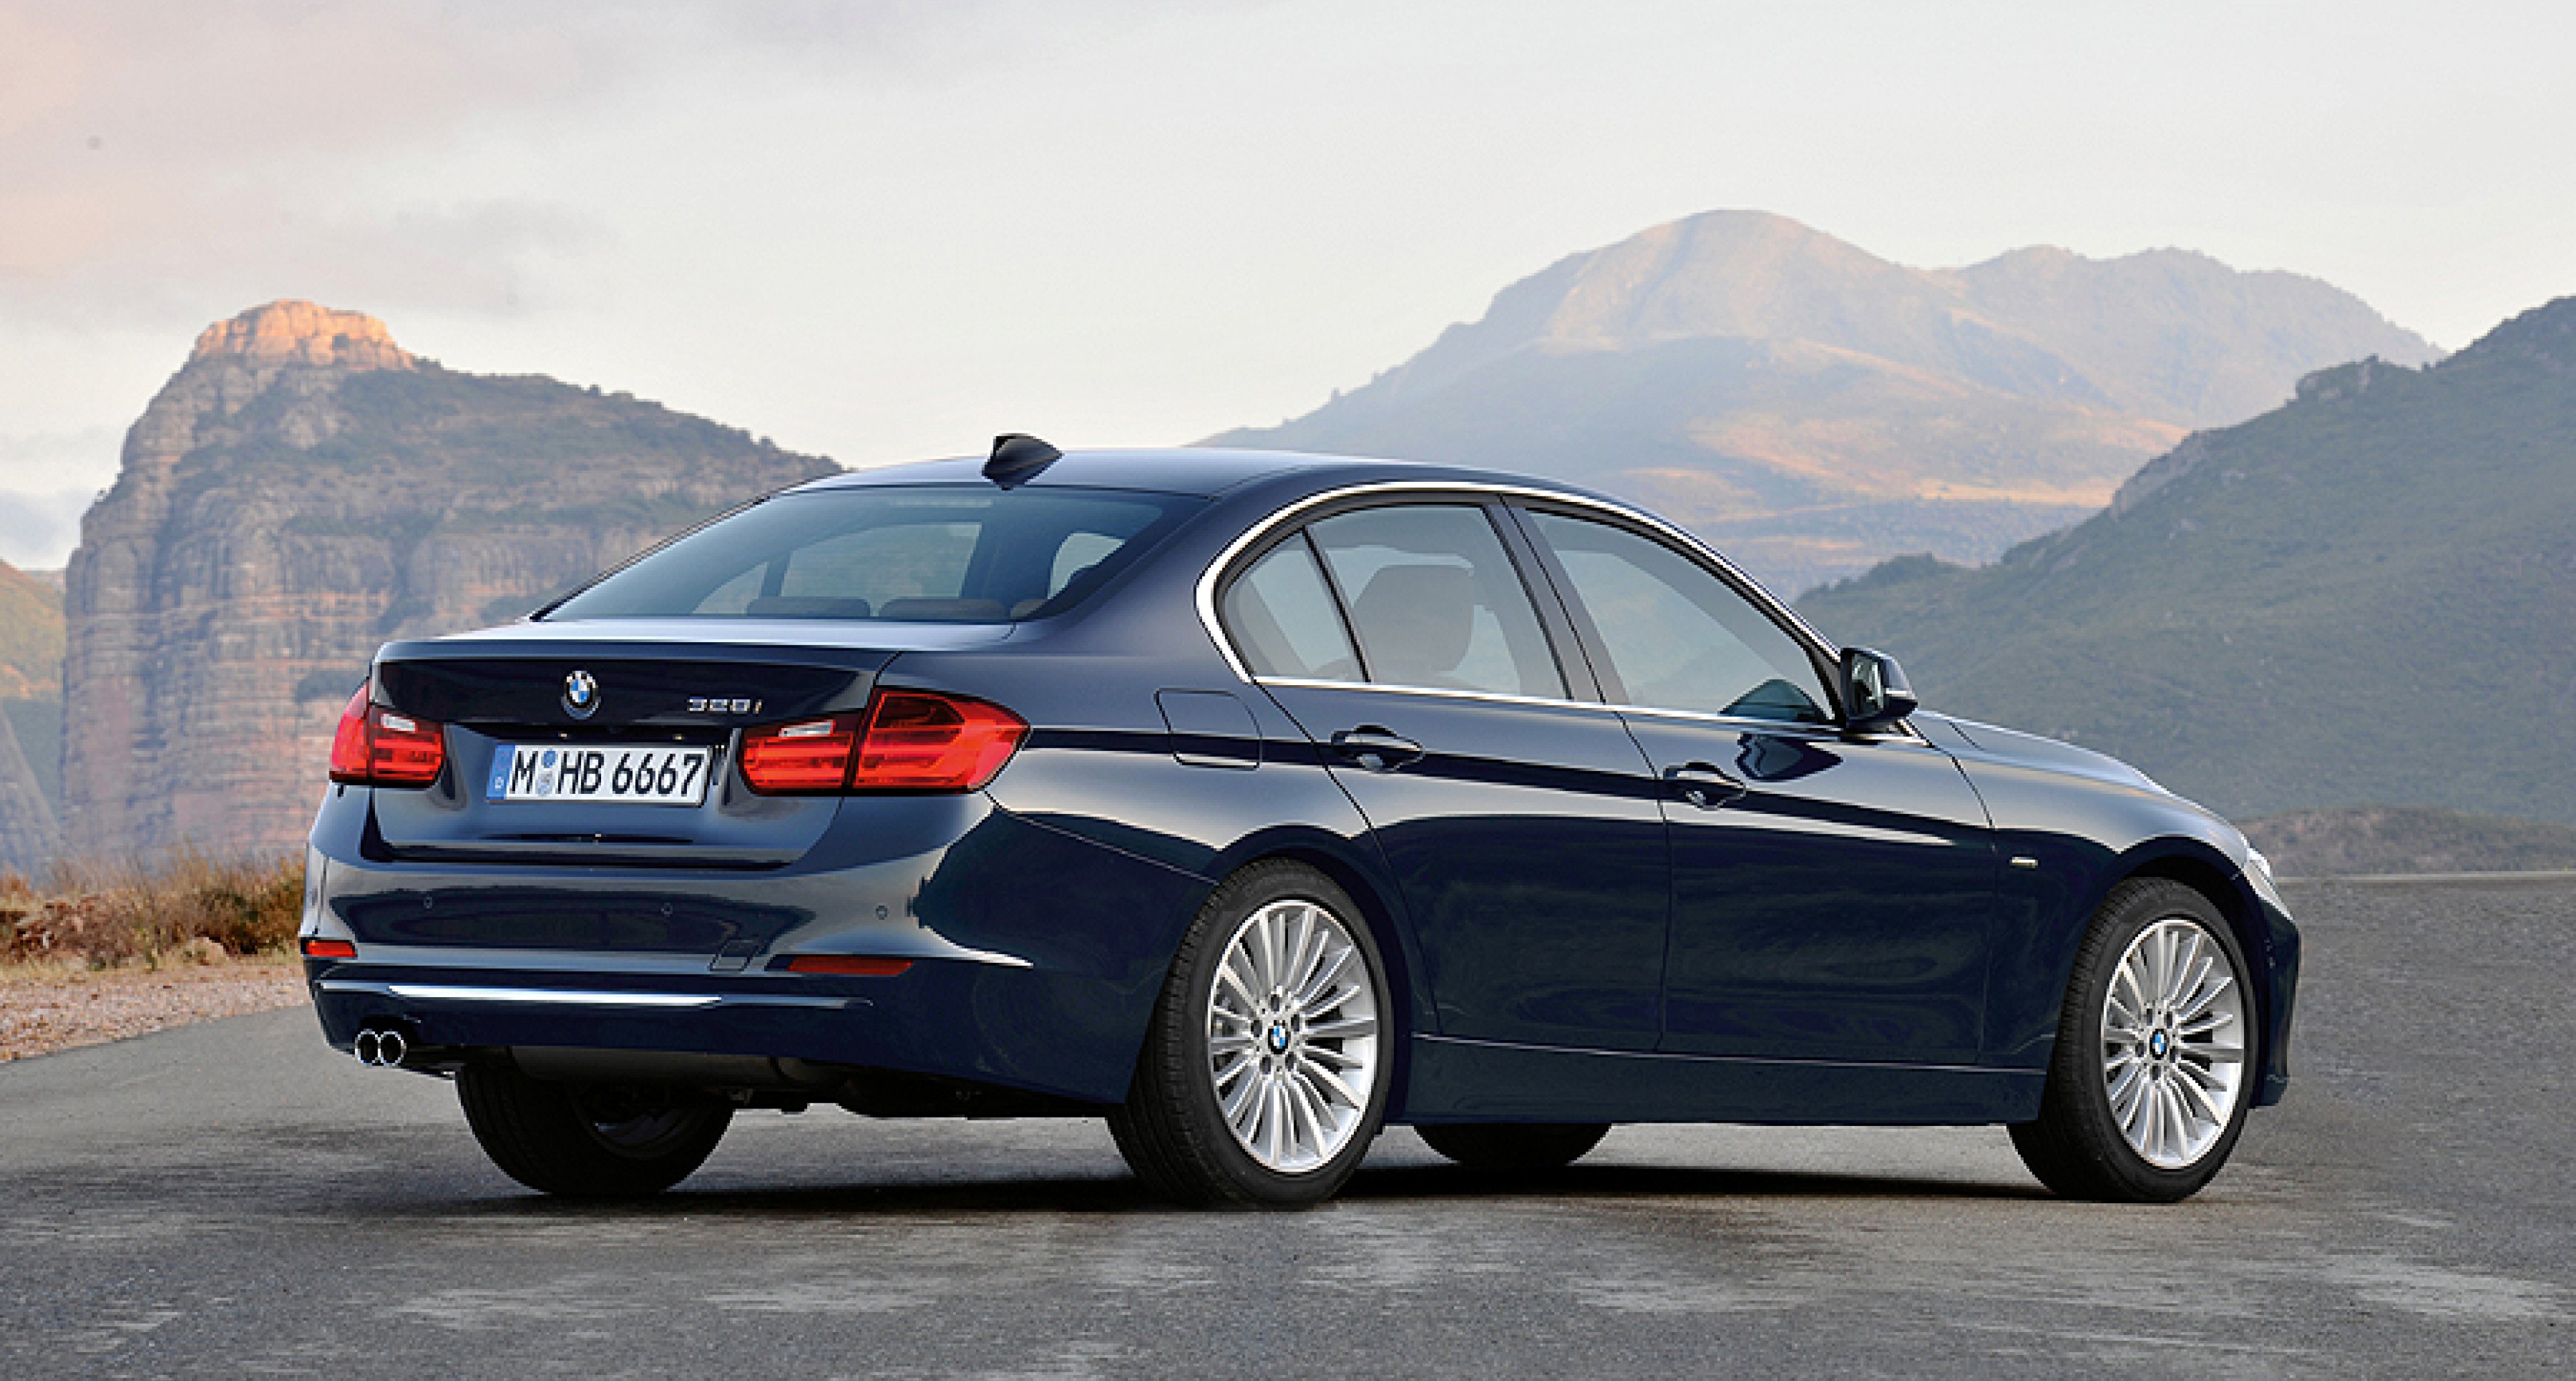 New 2012 BMW 3 Series revealed